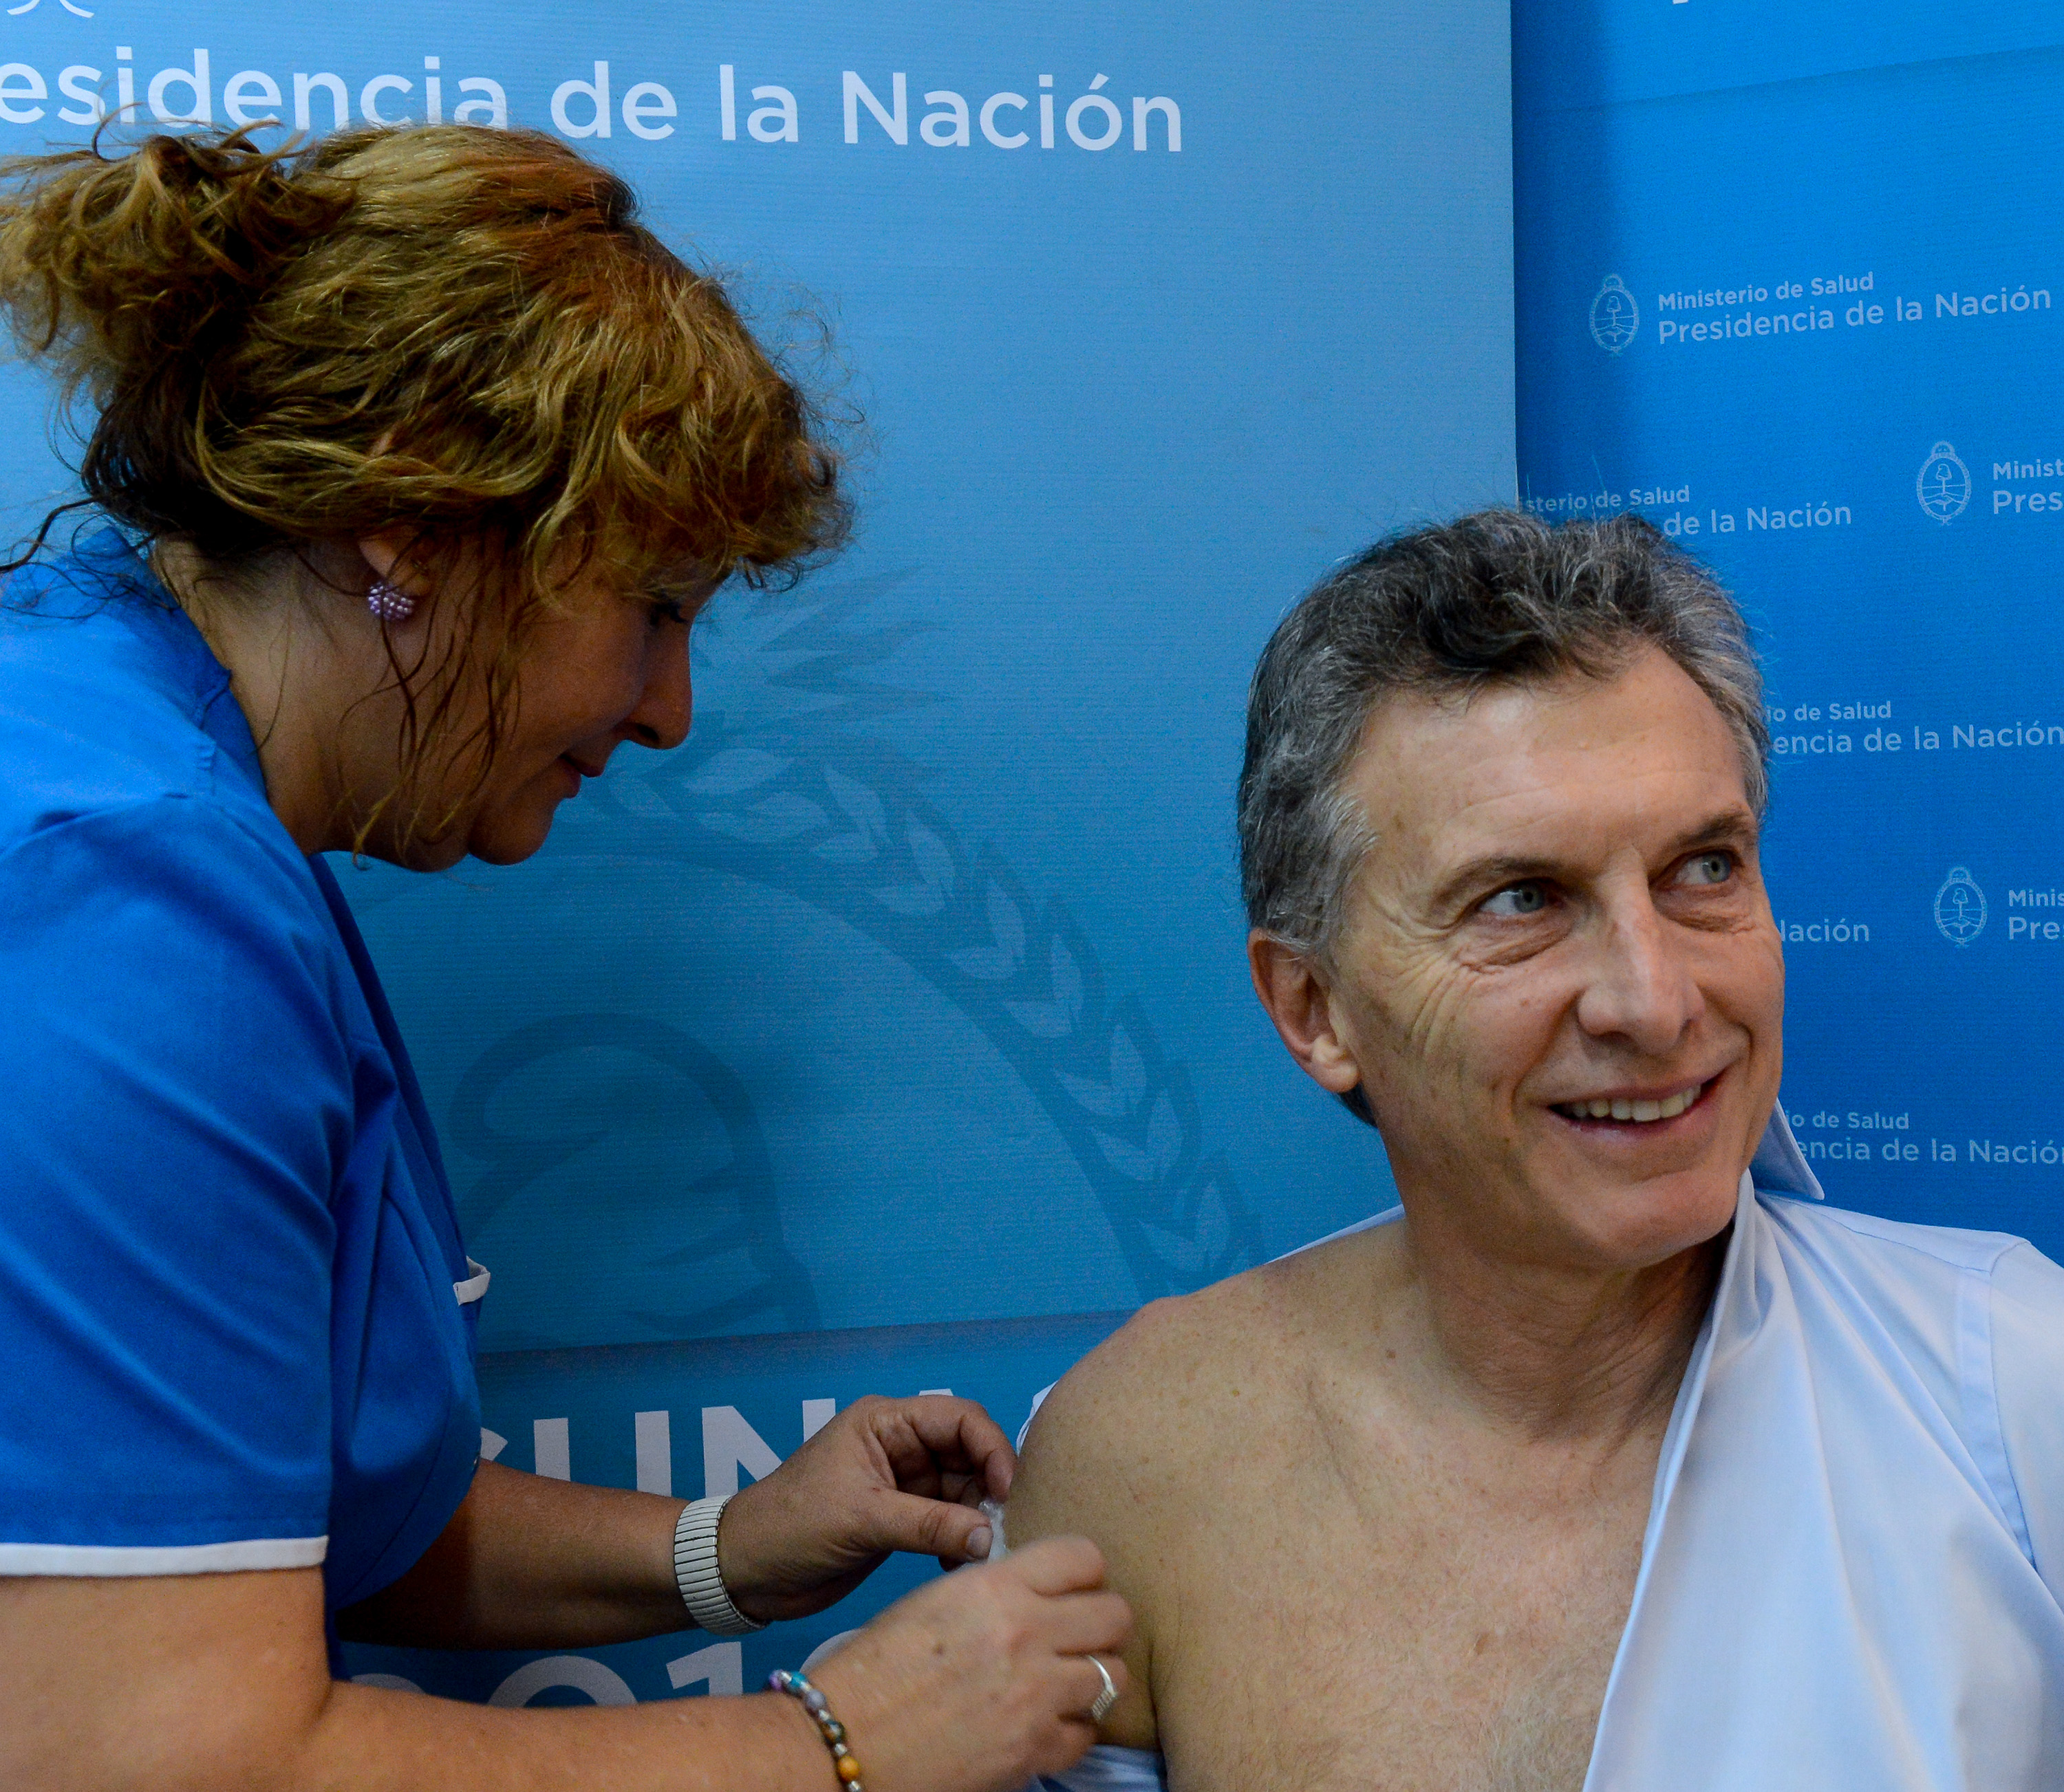 El presidente Macri se aplicó la vacuna antigripal